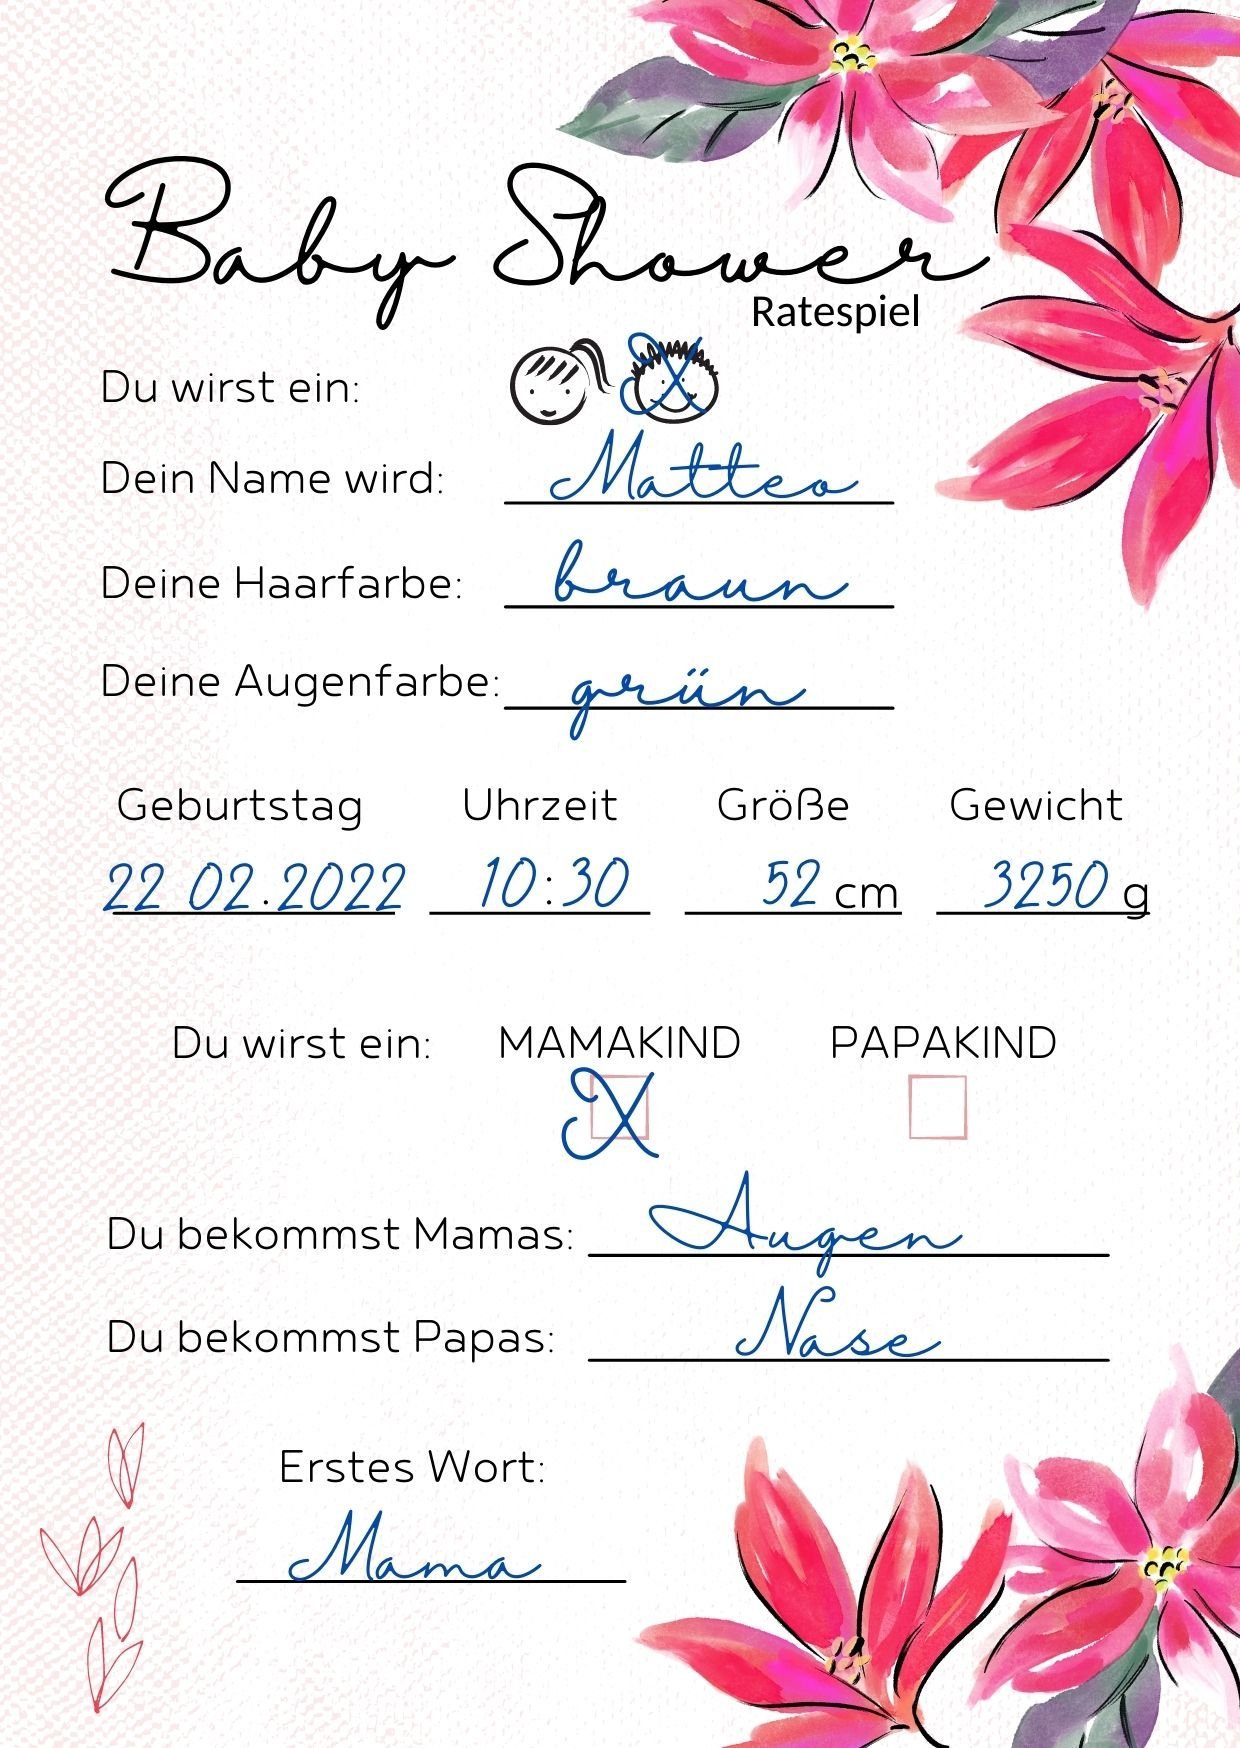 EMI & SAM Spiel, EMI&SAM Babyparty Wunschkarten Karten Junge & Mädchen Wünsche Baby Shower 20 St, Blumen Rosa